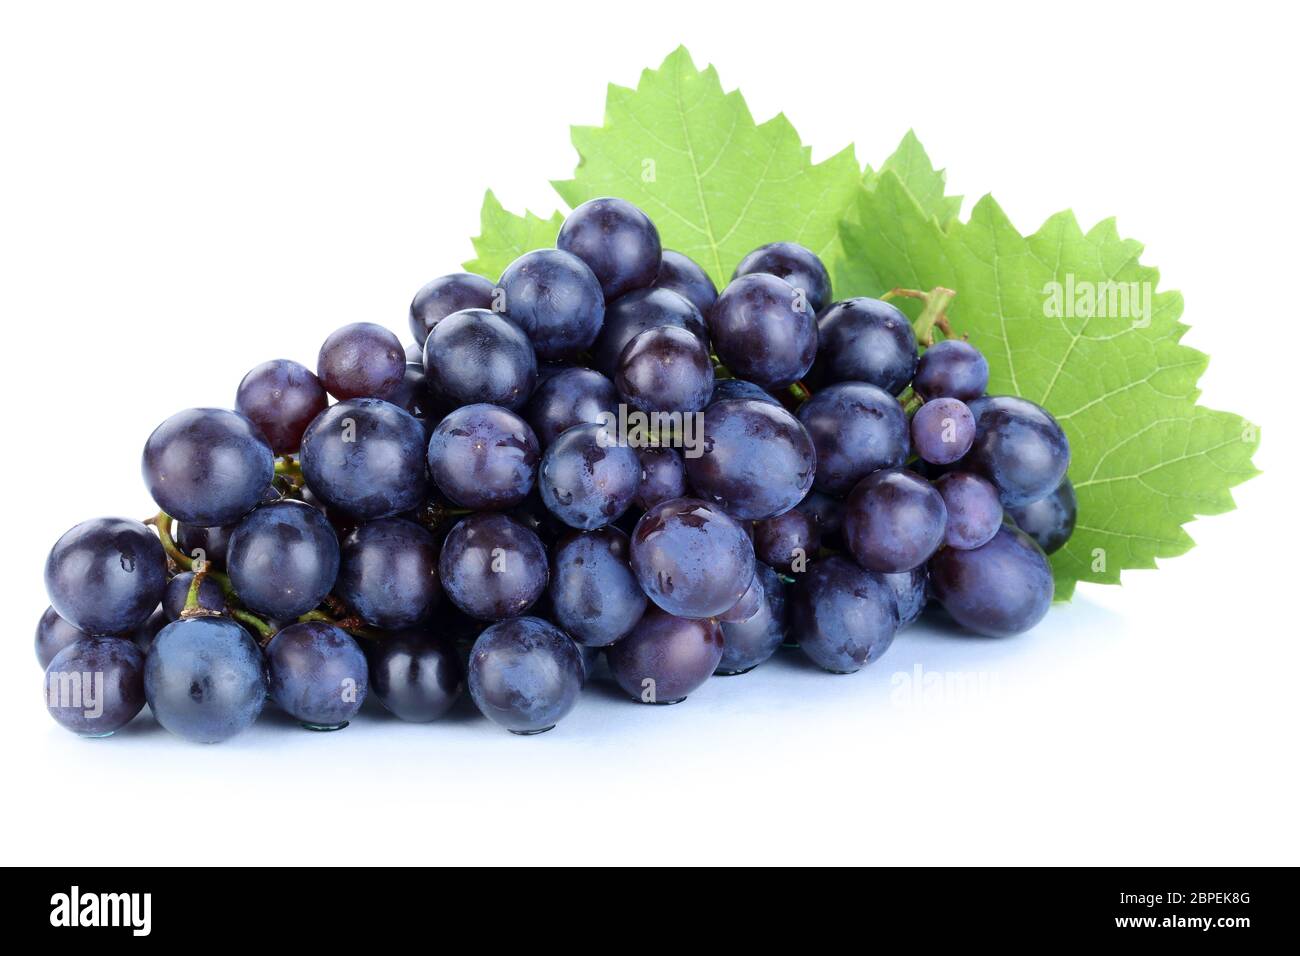 Trauben Weintrauben blau Früchte Obst Freisteller freigestellt isoliert vor einem weissen Hintergrund Stock Photo